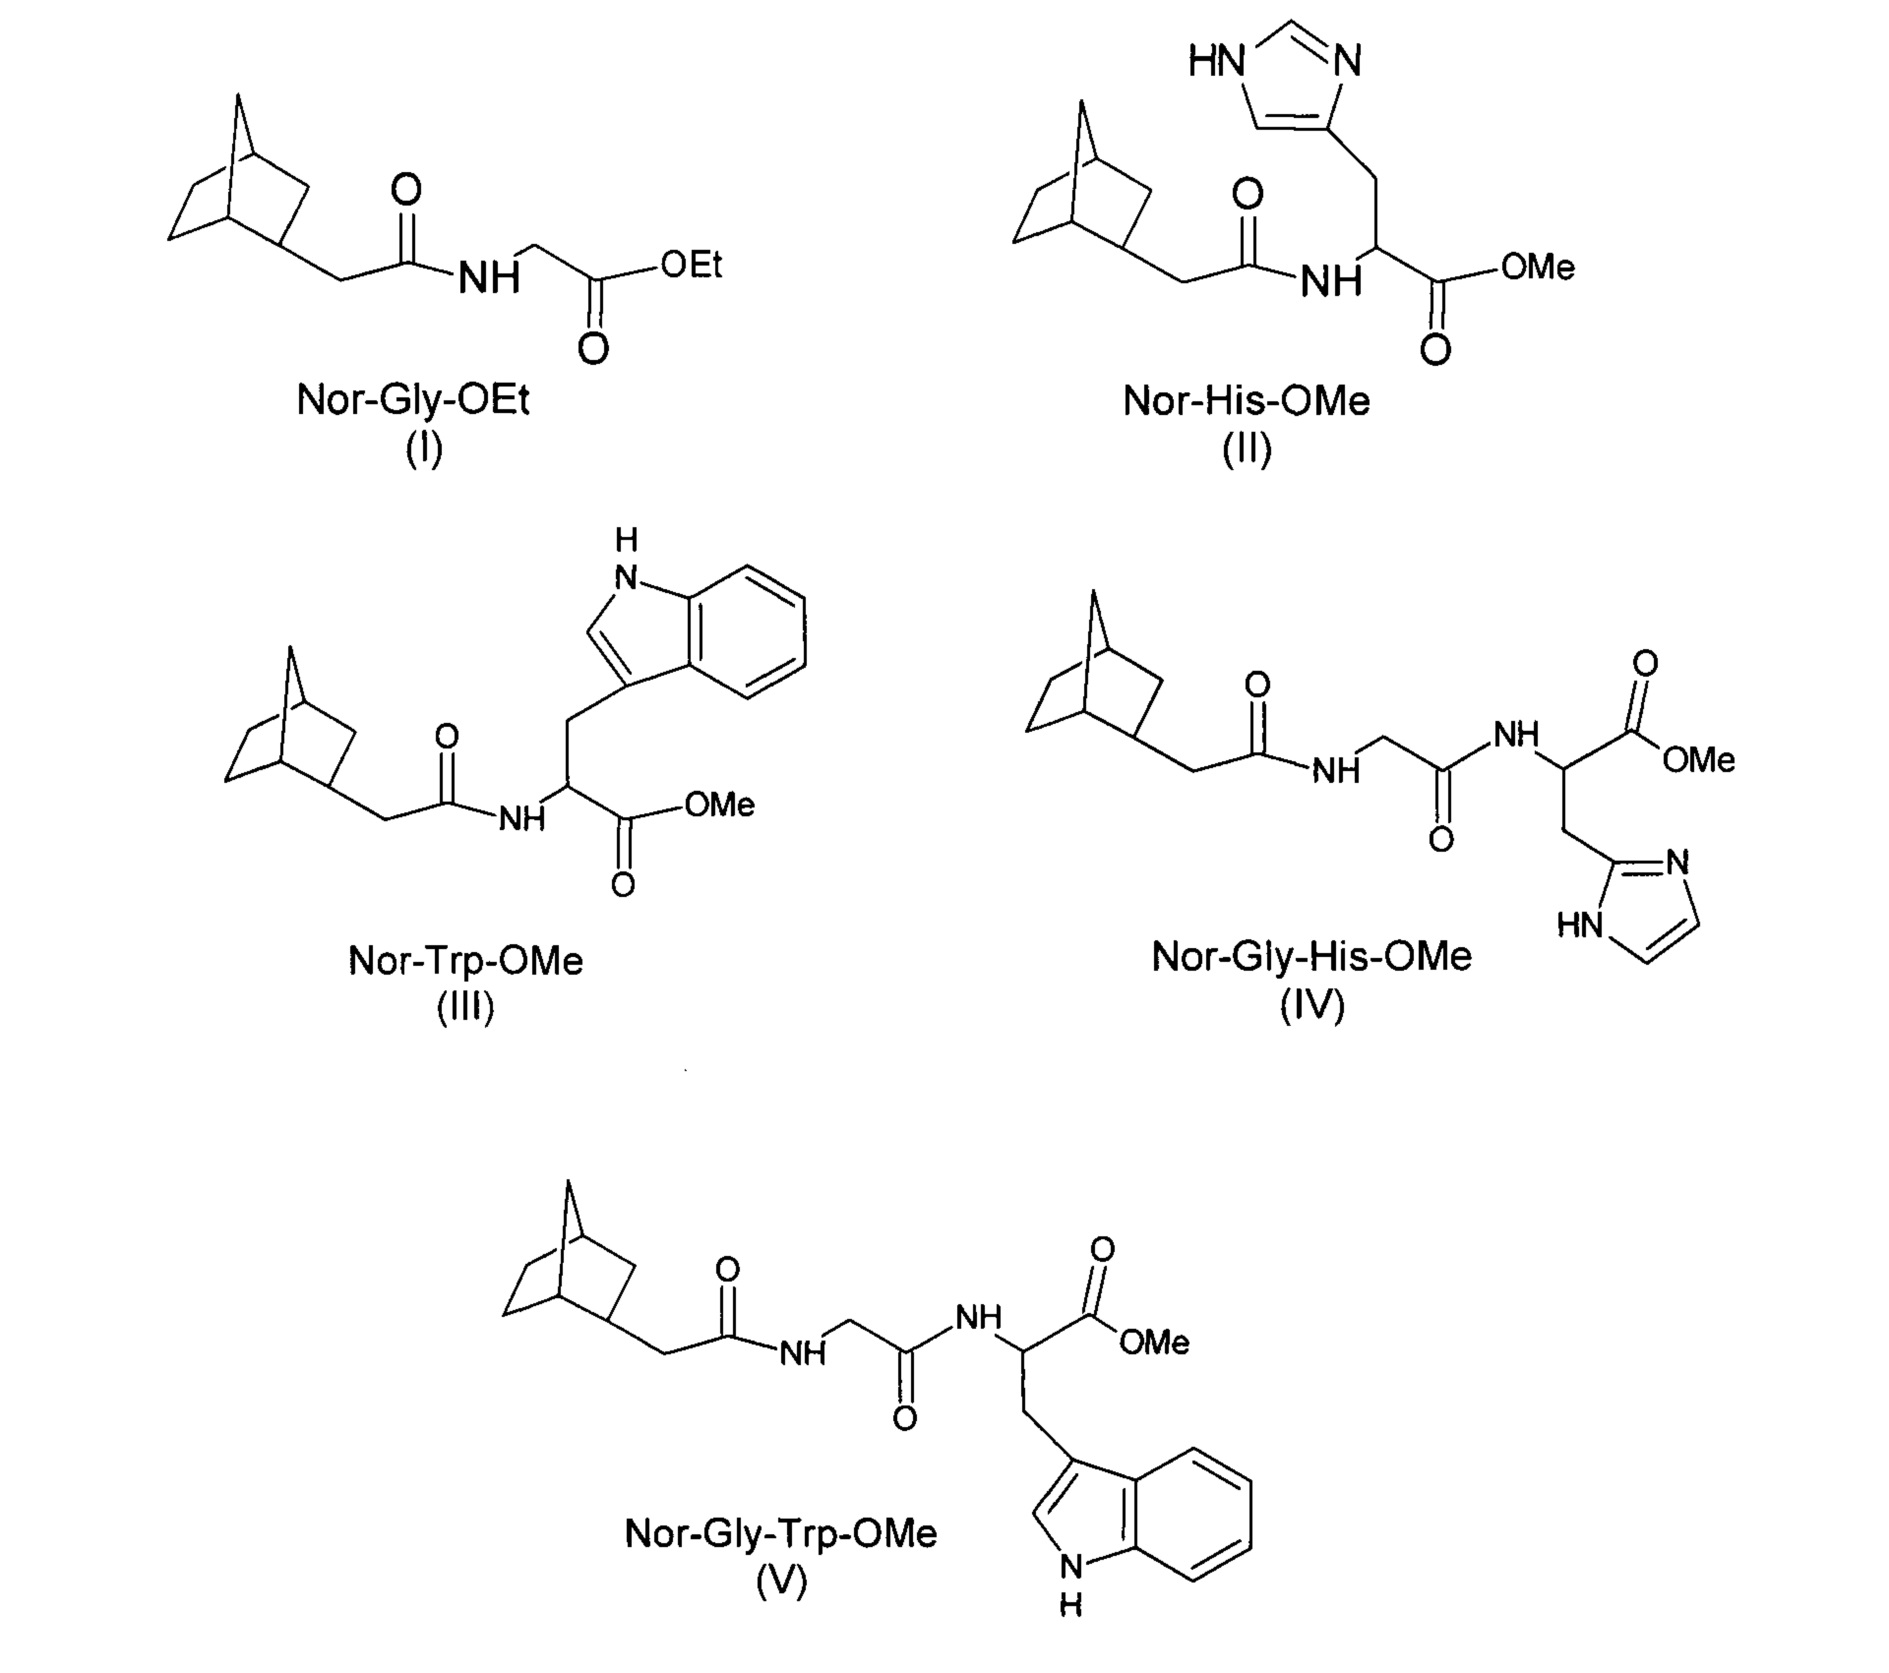 Аминокислотные производные 2-норборнануксусной кислоты и их противогриппозная активность